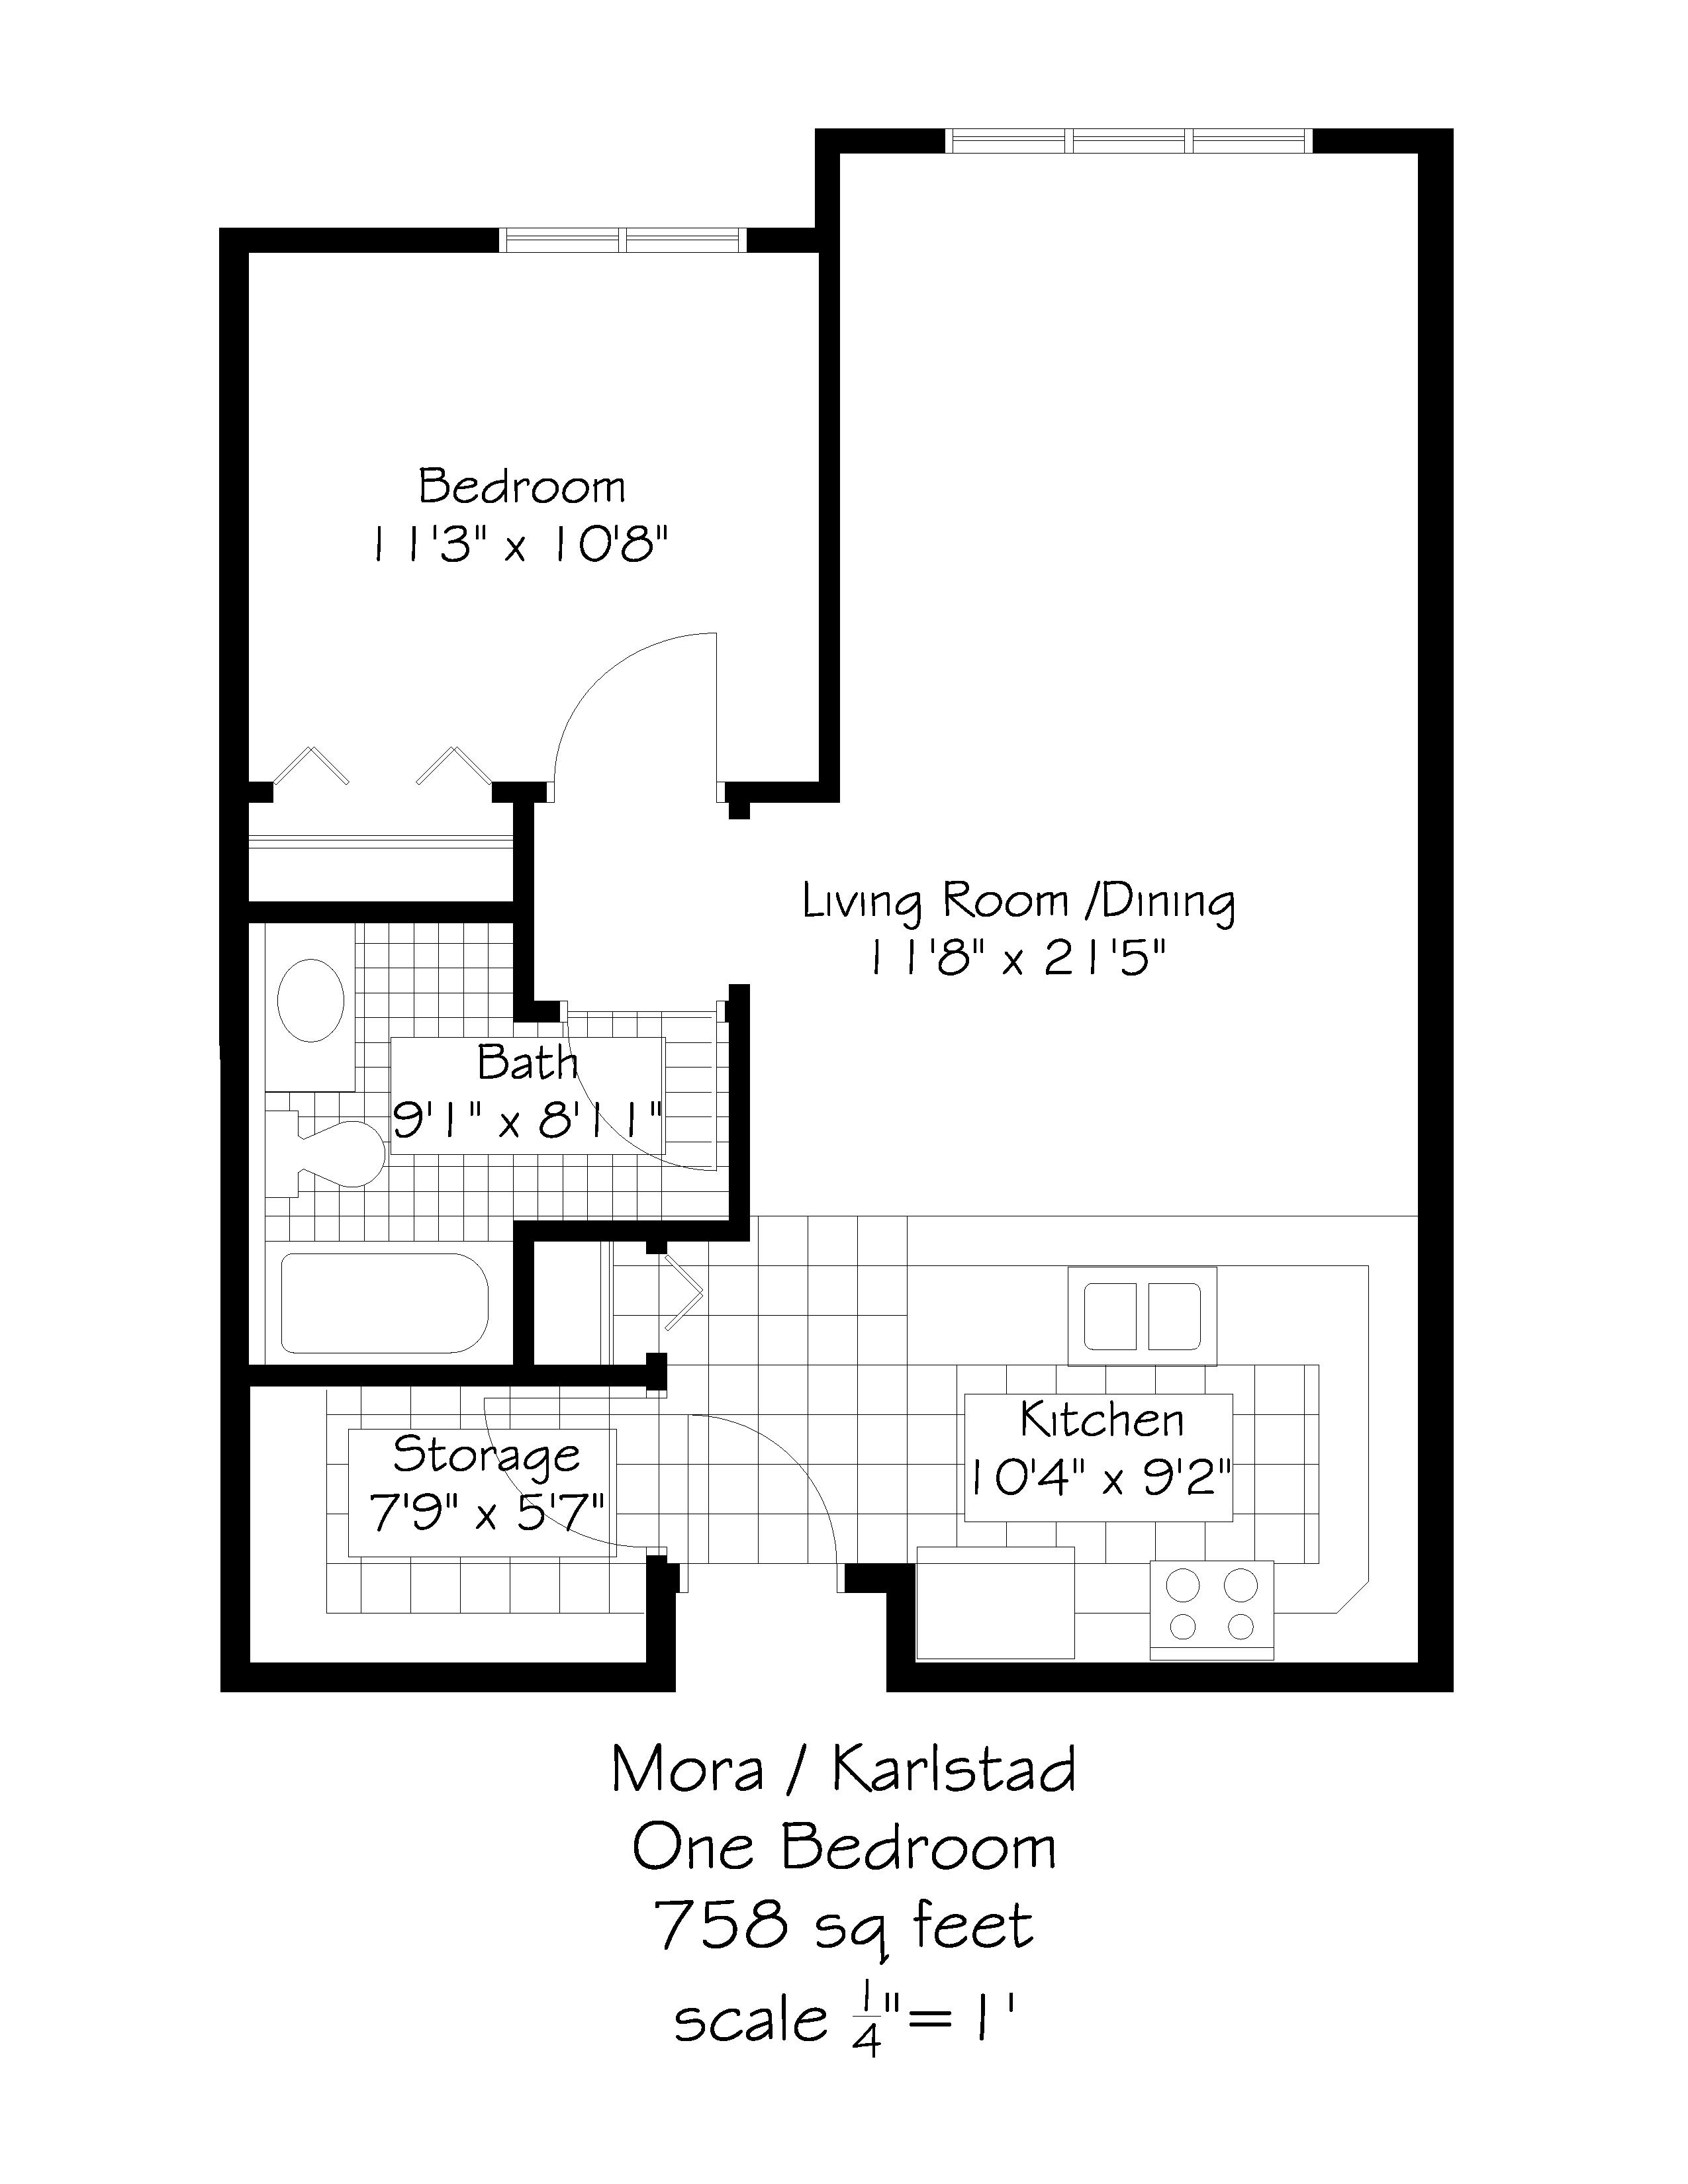 Floor plan for Mora / Karlstad